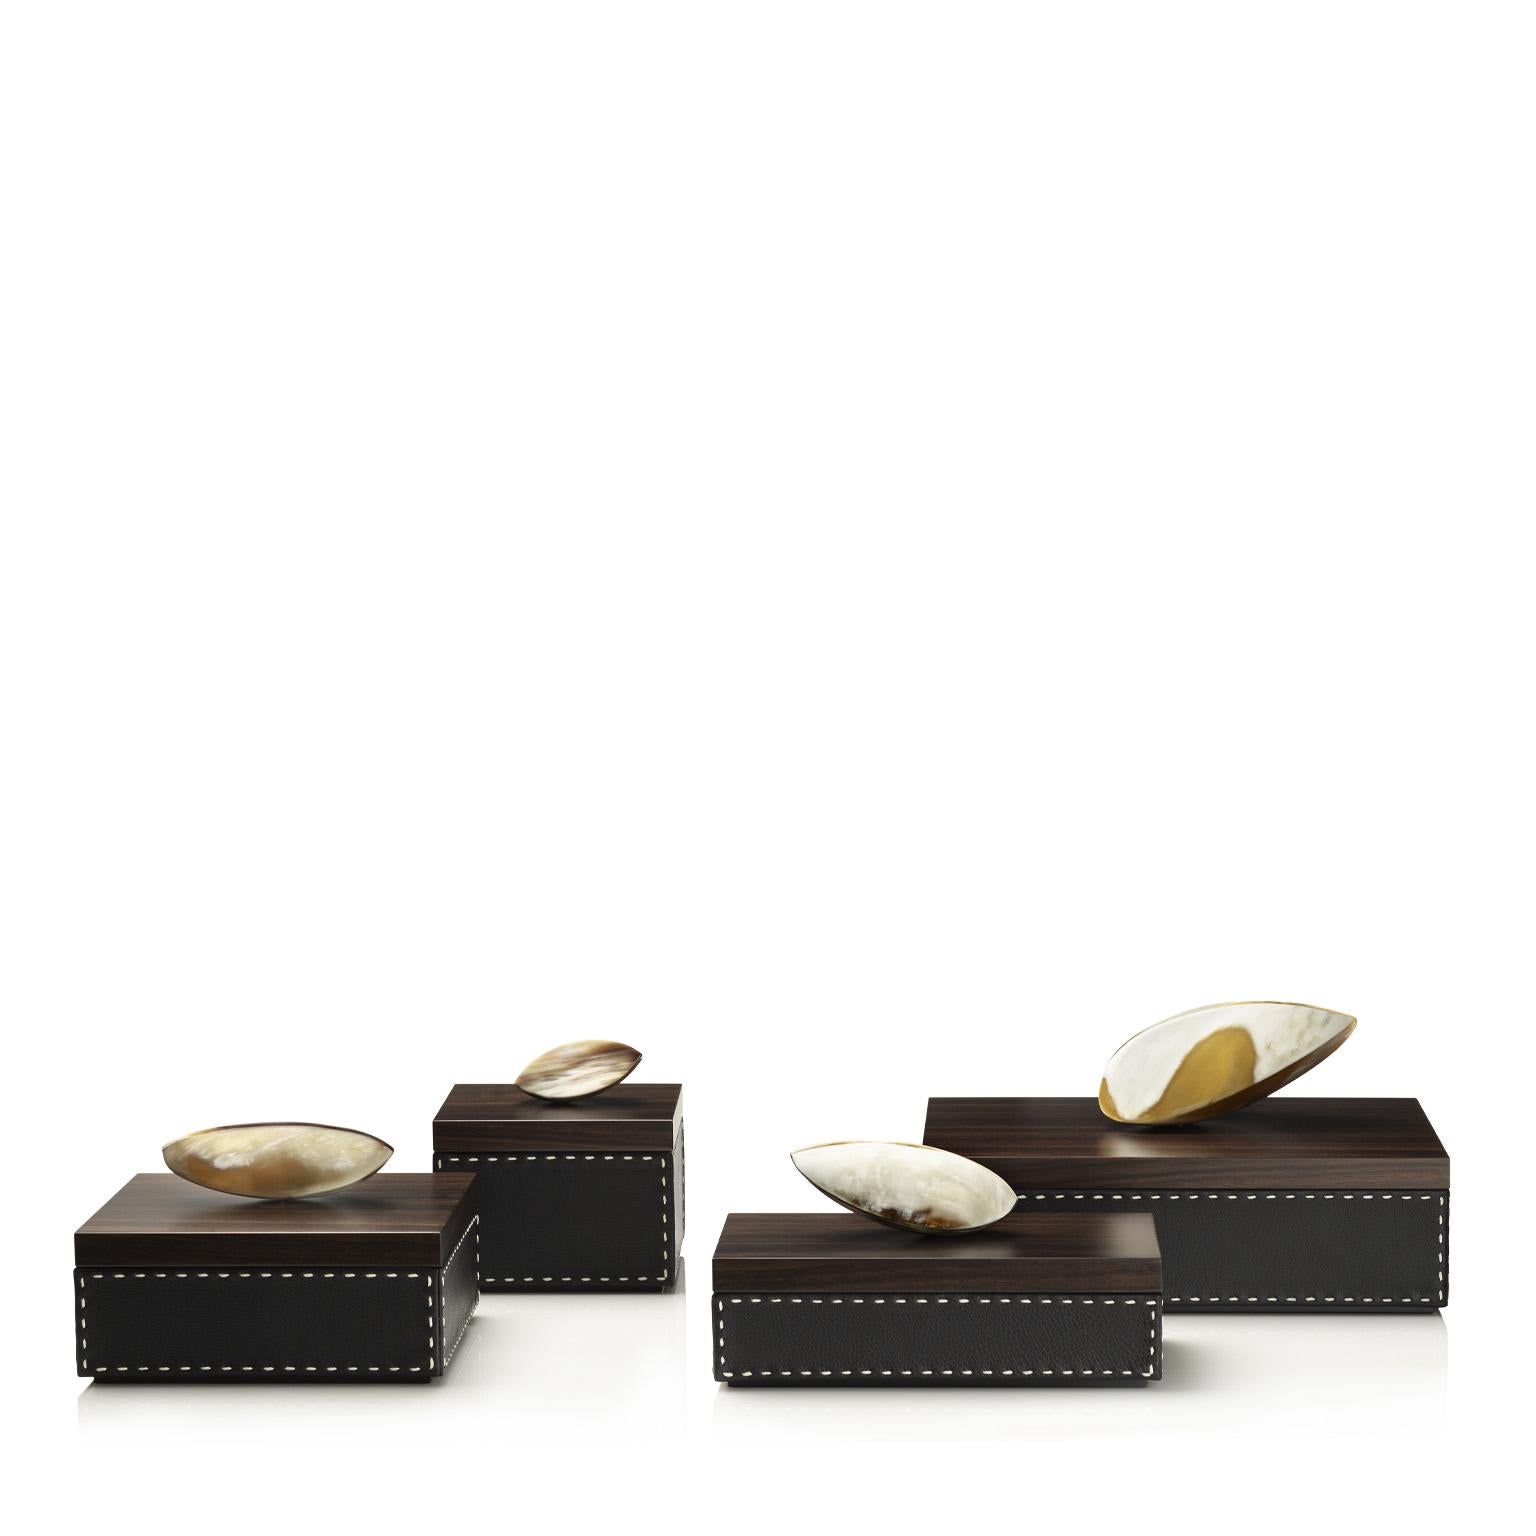 Capricia Box in Pebbled Leather with Handle in Corno Italiano, Mod. 4477 In New Condition For Sale In Recanati, Macerata